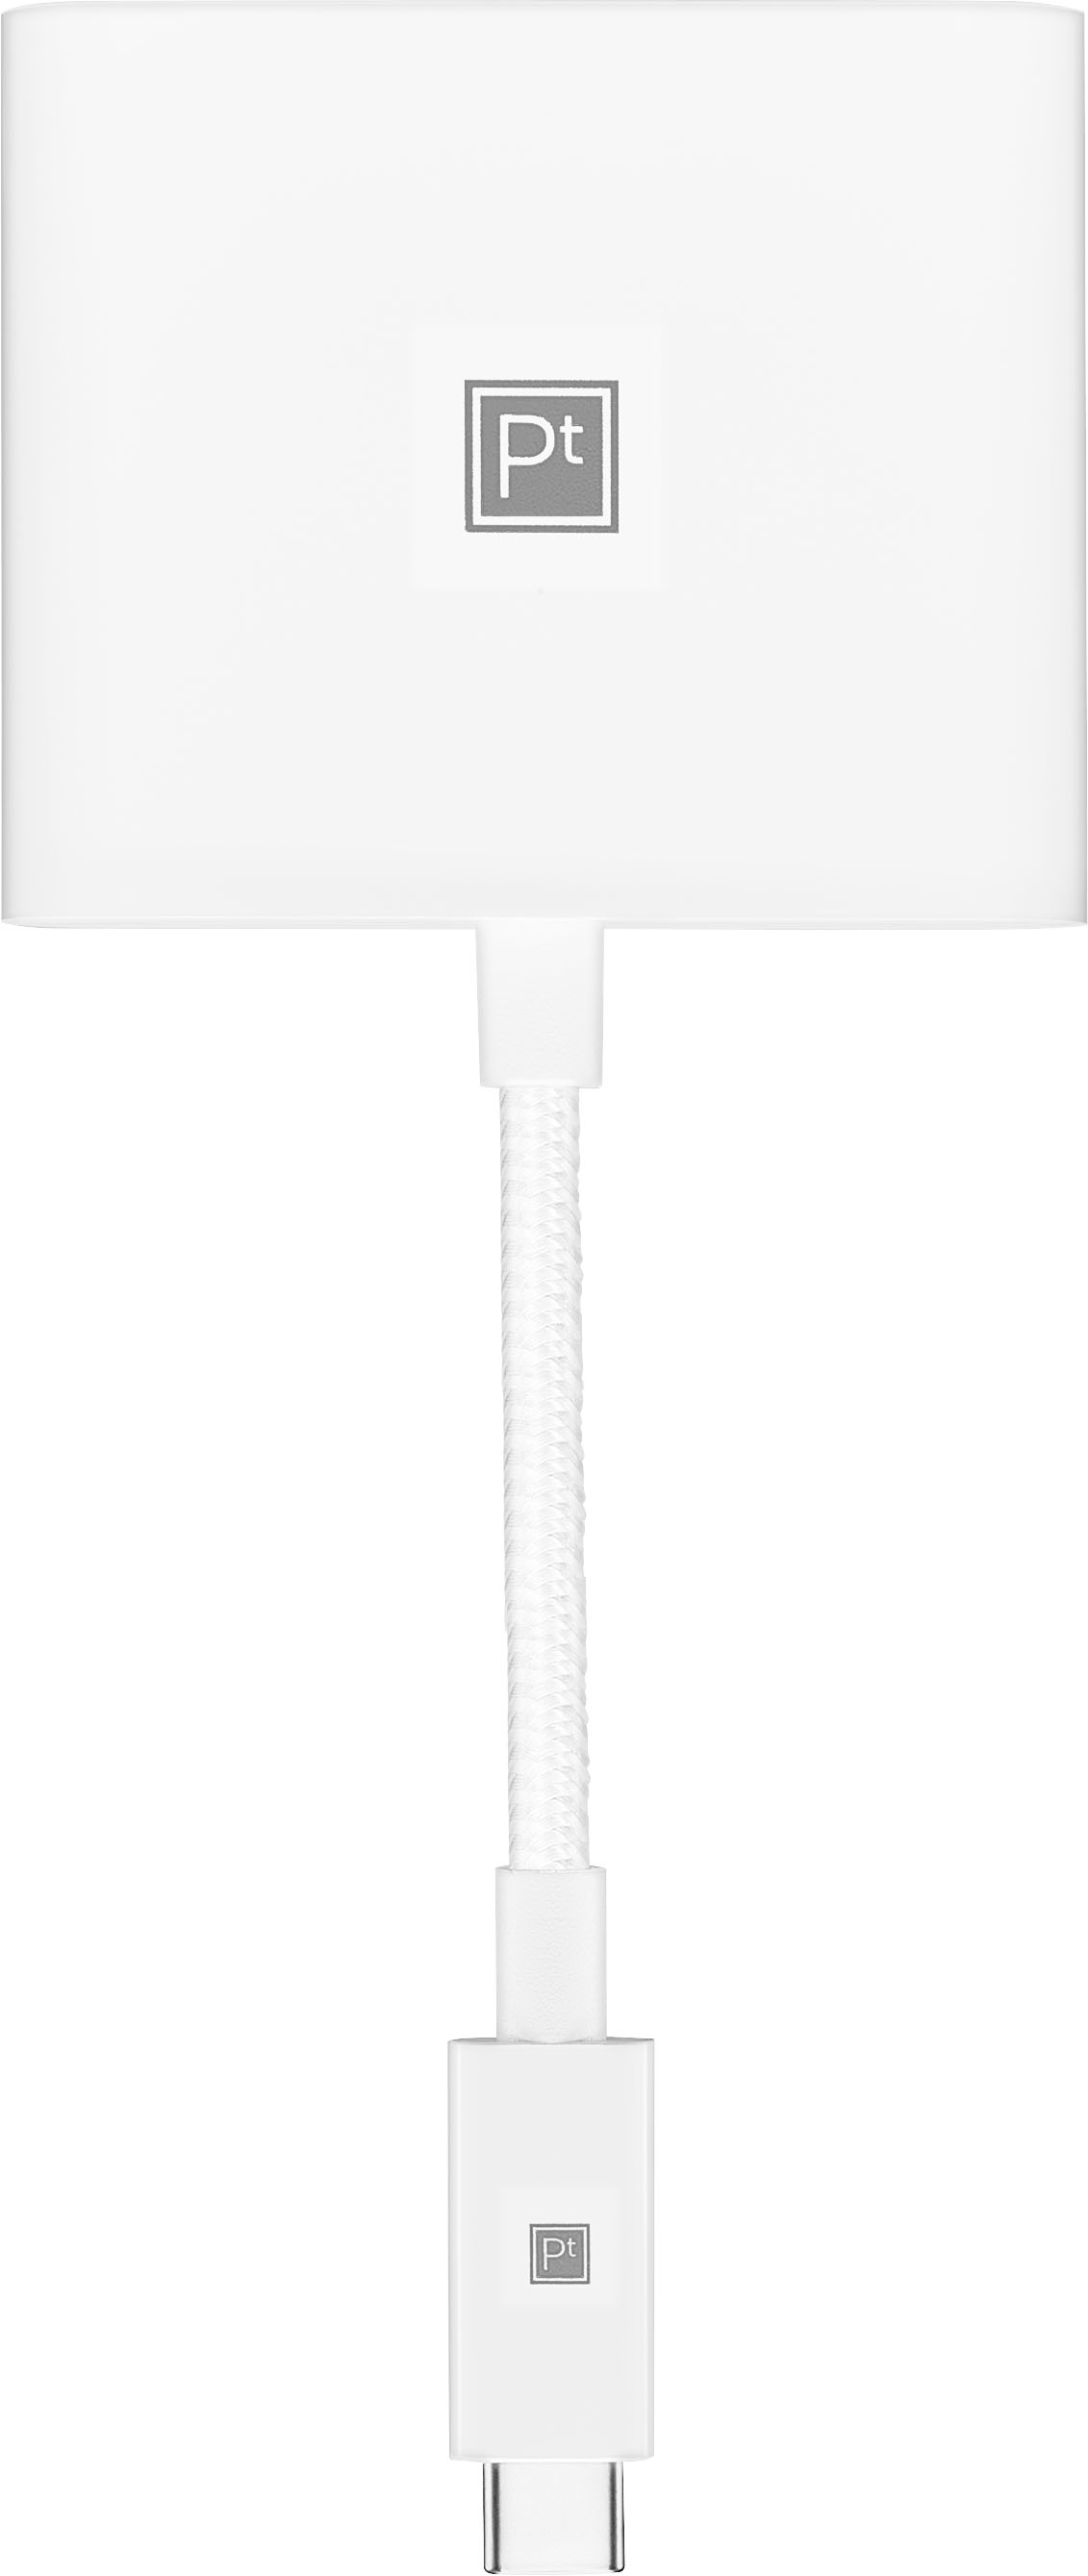 Apple Apple USB-C Digital AV Multiport Adapter - Central Tech Store